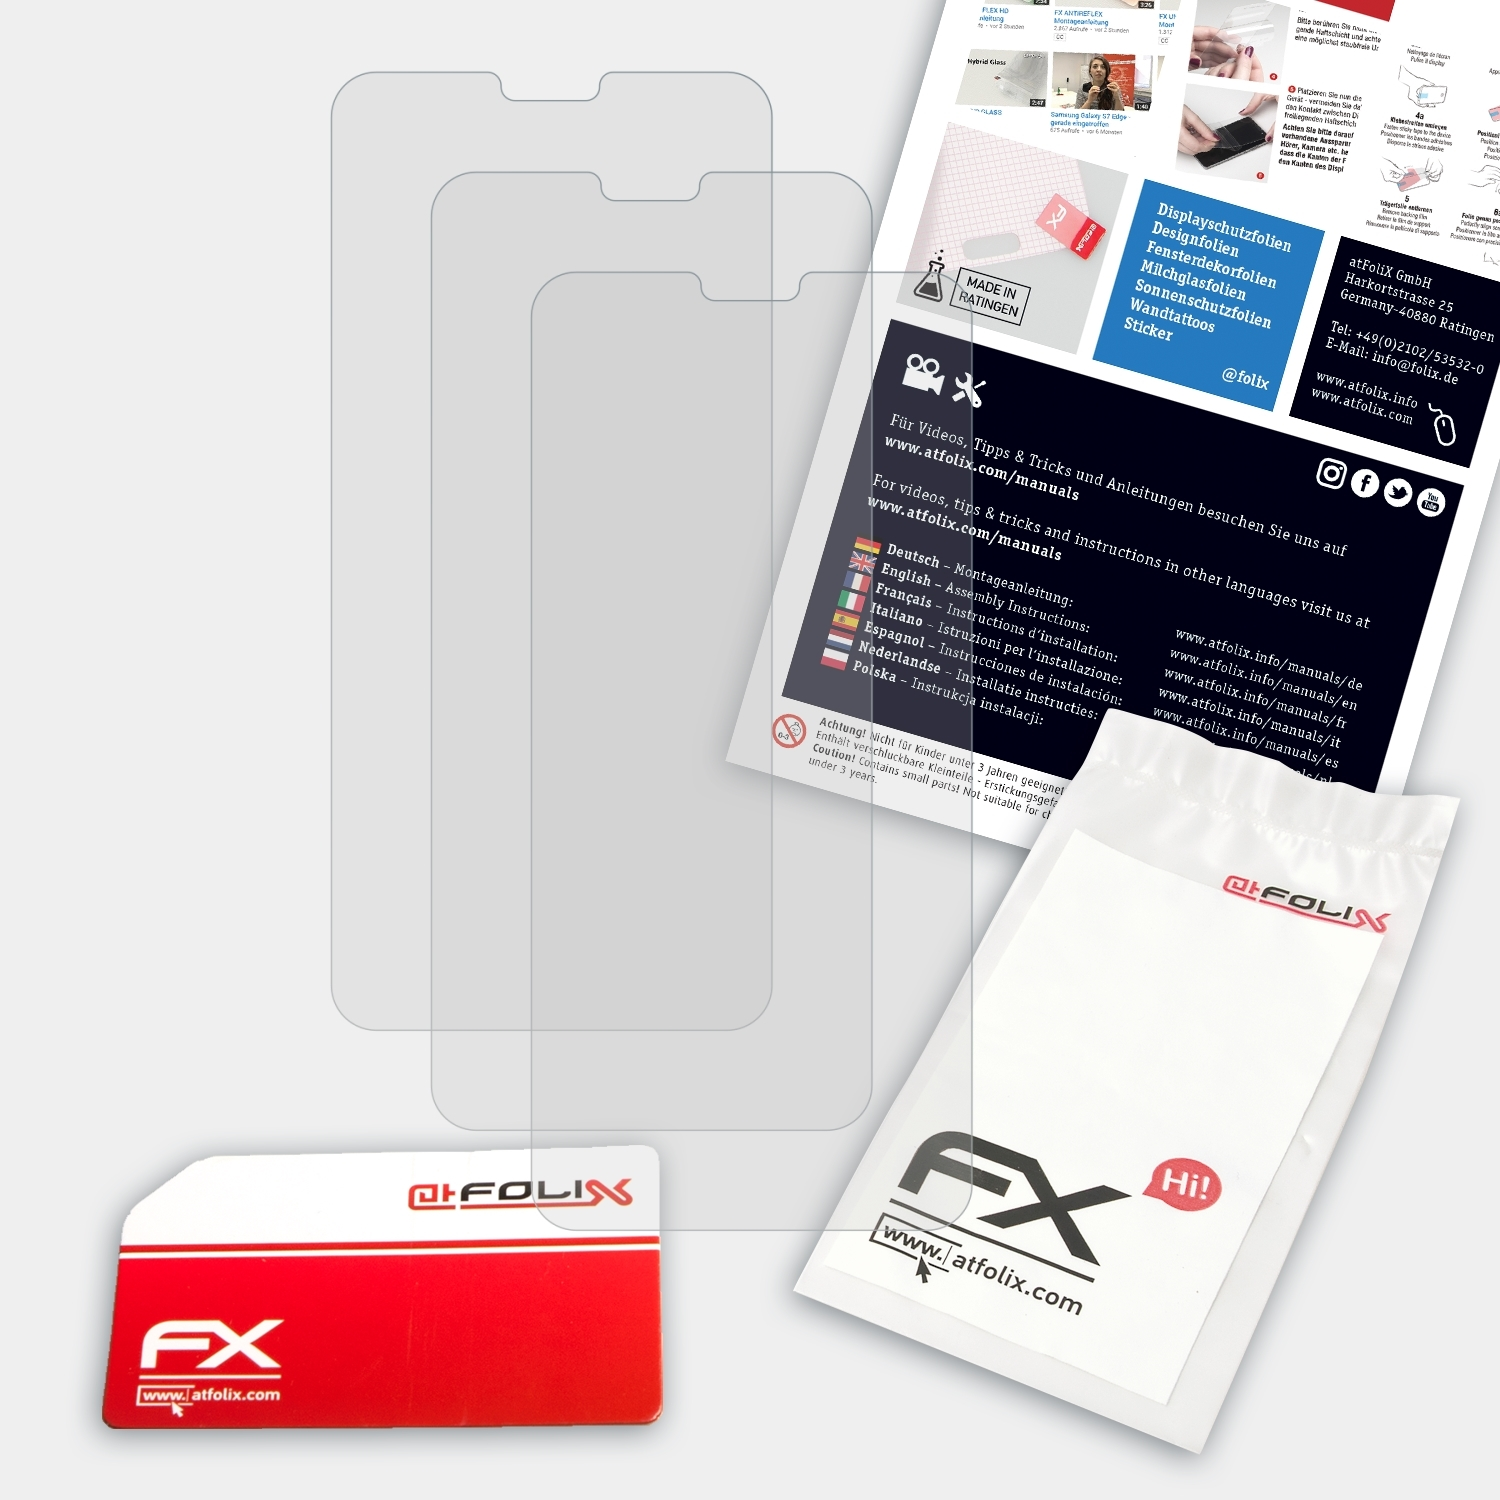 ATFOLIX 3x FX-Antireflex Displayschutz(für Nokia 6.1 Plus)